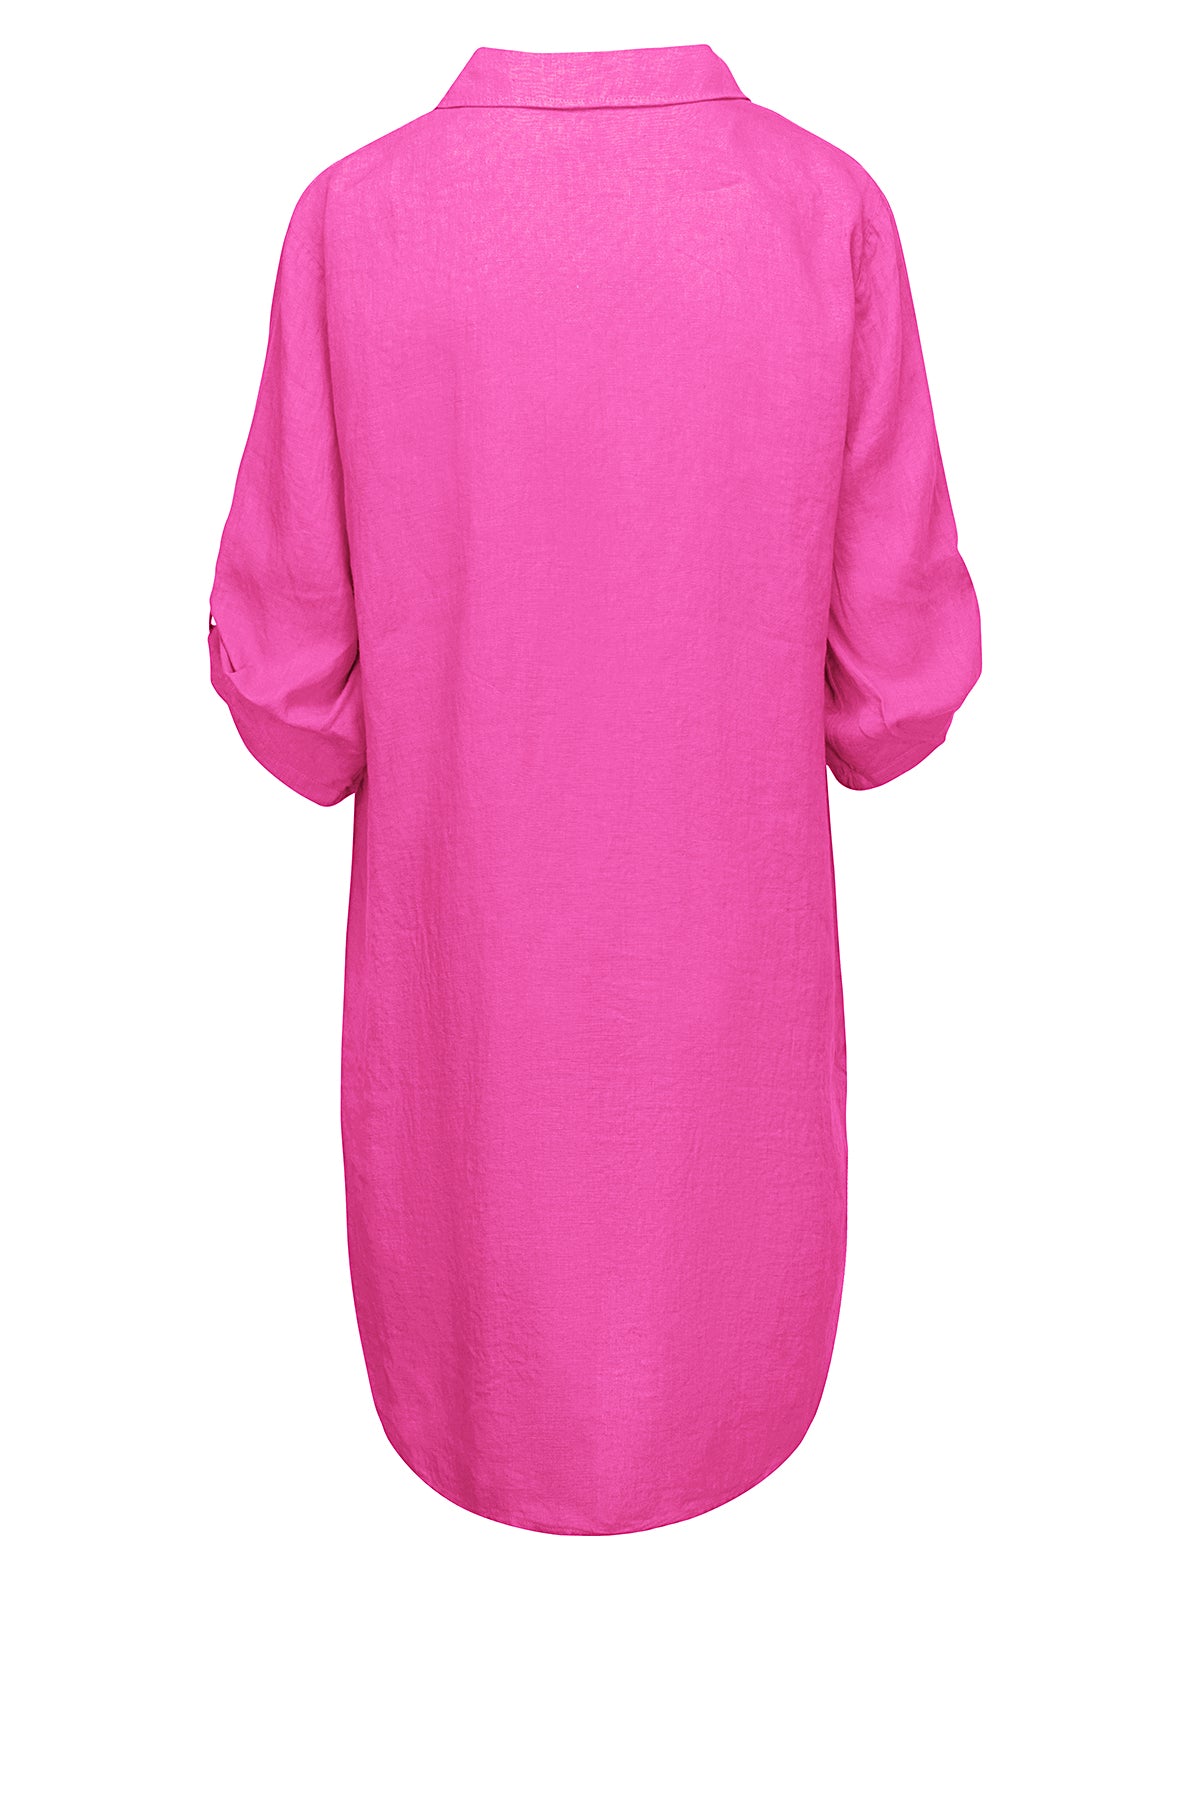 LUXZUZ // ONE TWO Siwinia Dress Dress 388 Cabaret Pink